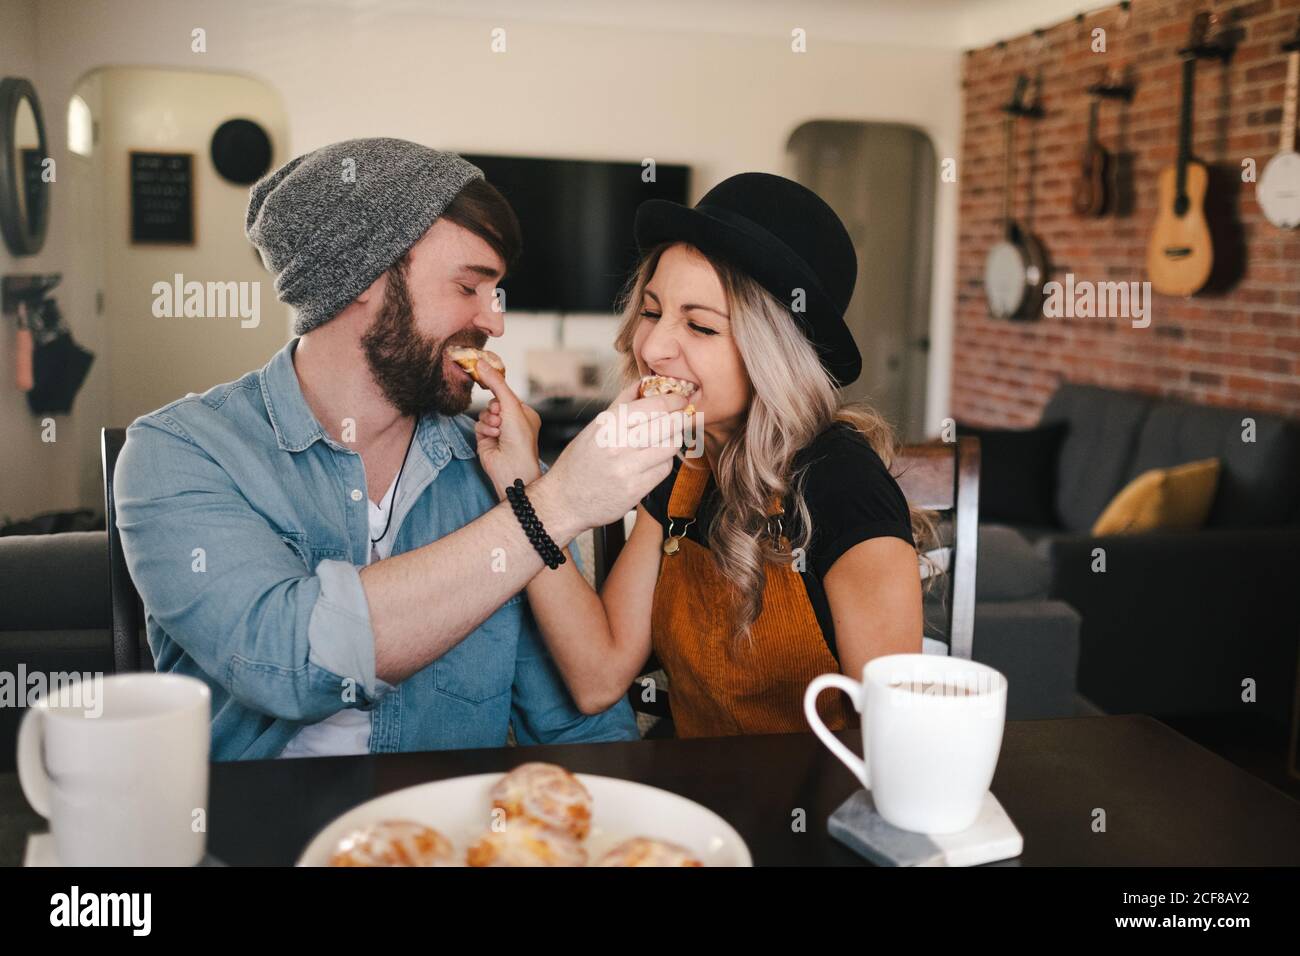 Glückliche Partner in legerer Kleidung füttern sich gegenseitig mit süß Rollt, während die Augen geschlossen werden und am Tisch mit Tassen sitzt Von Kaffee in gemütlichen Wohnung Stockfoto